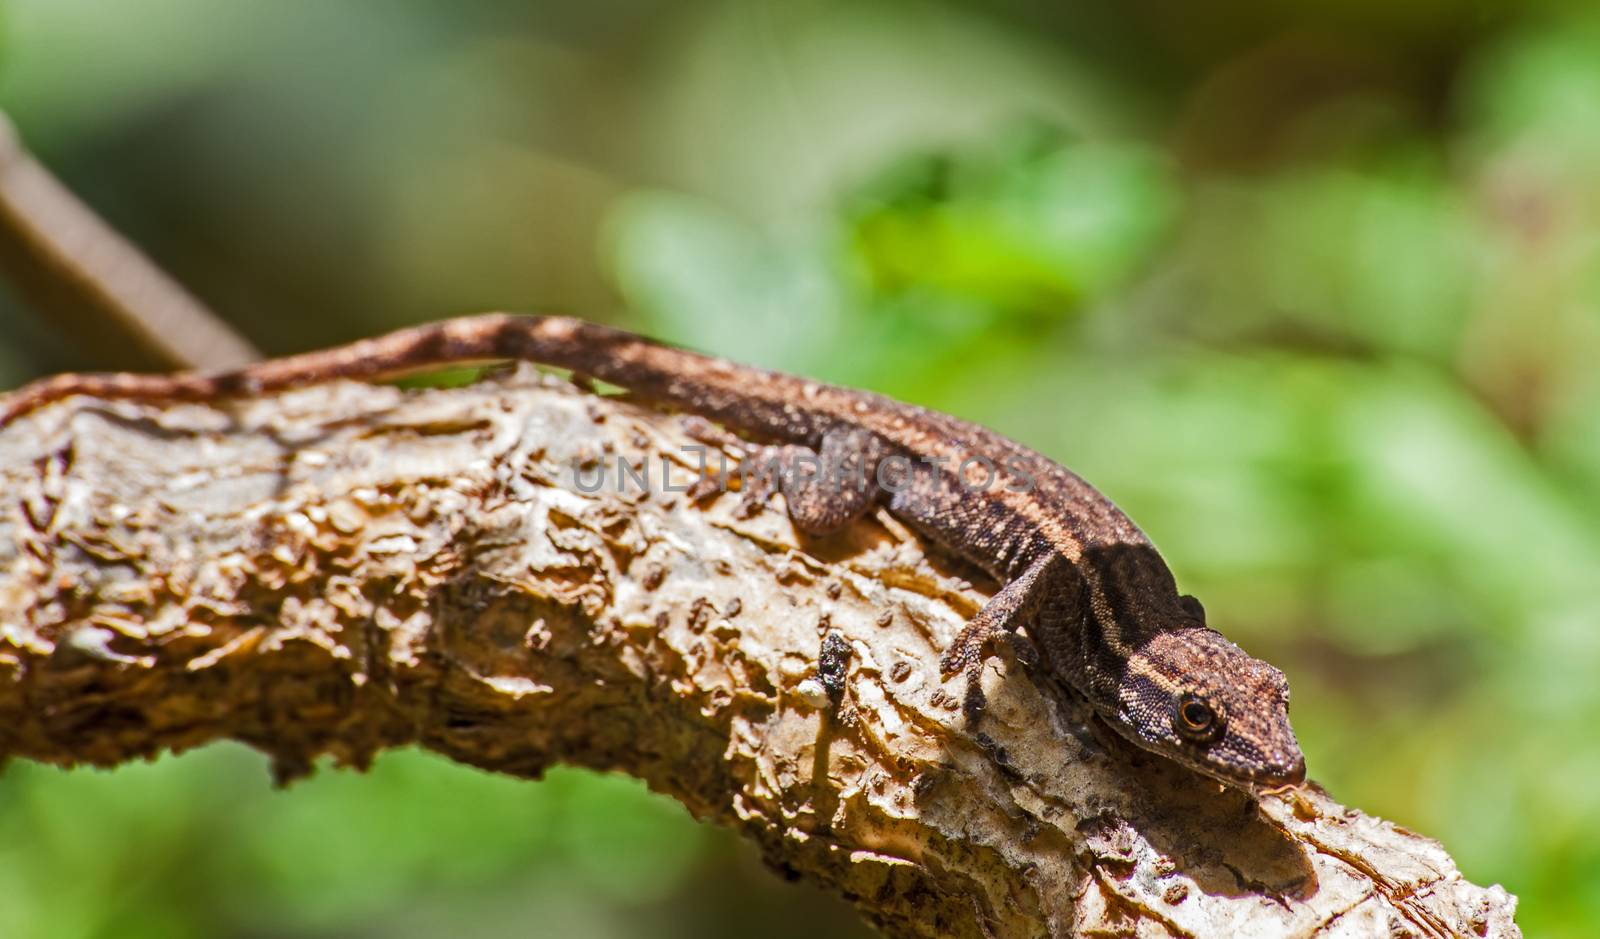 Cape Dwarf Gecko (Lygodactylus capensis) 1 by kobus_peche